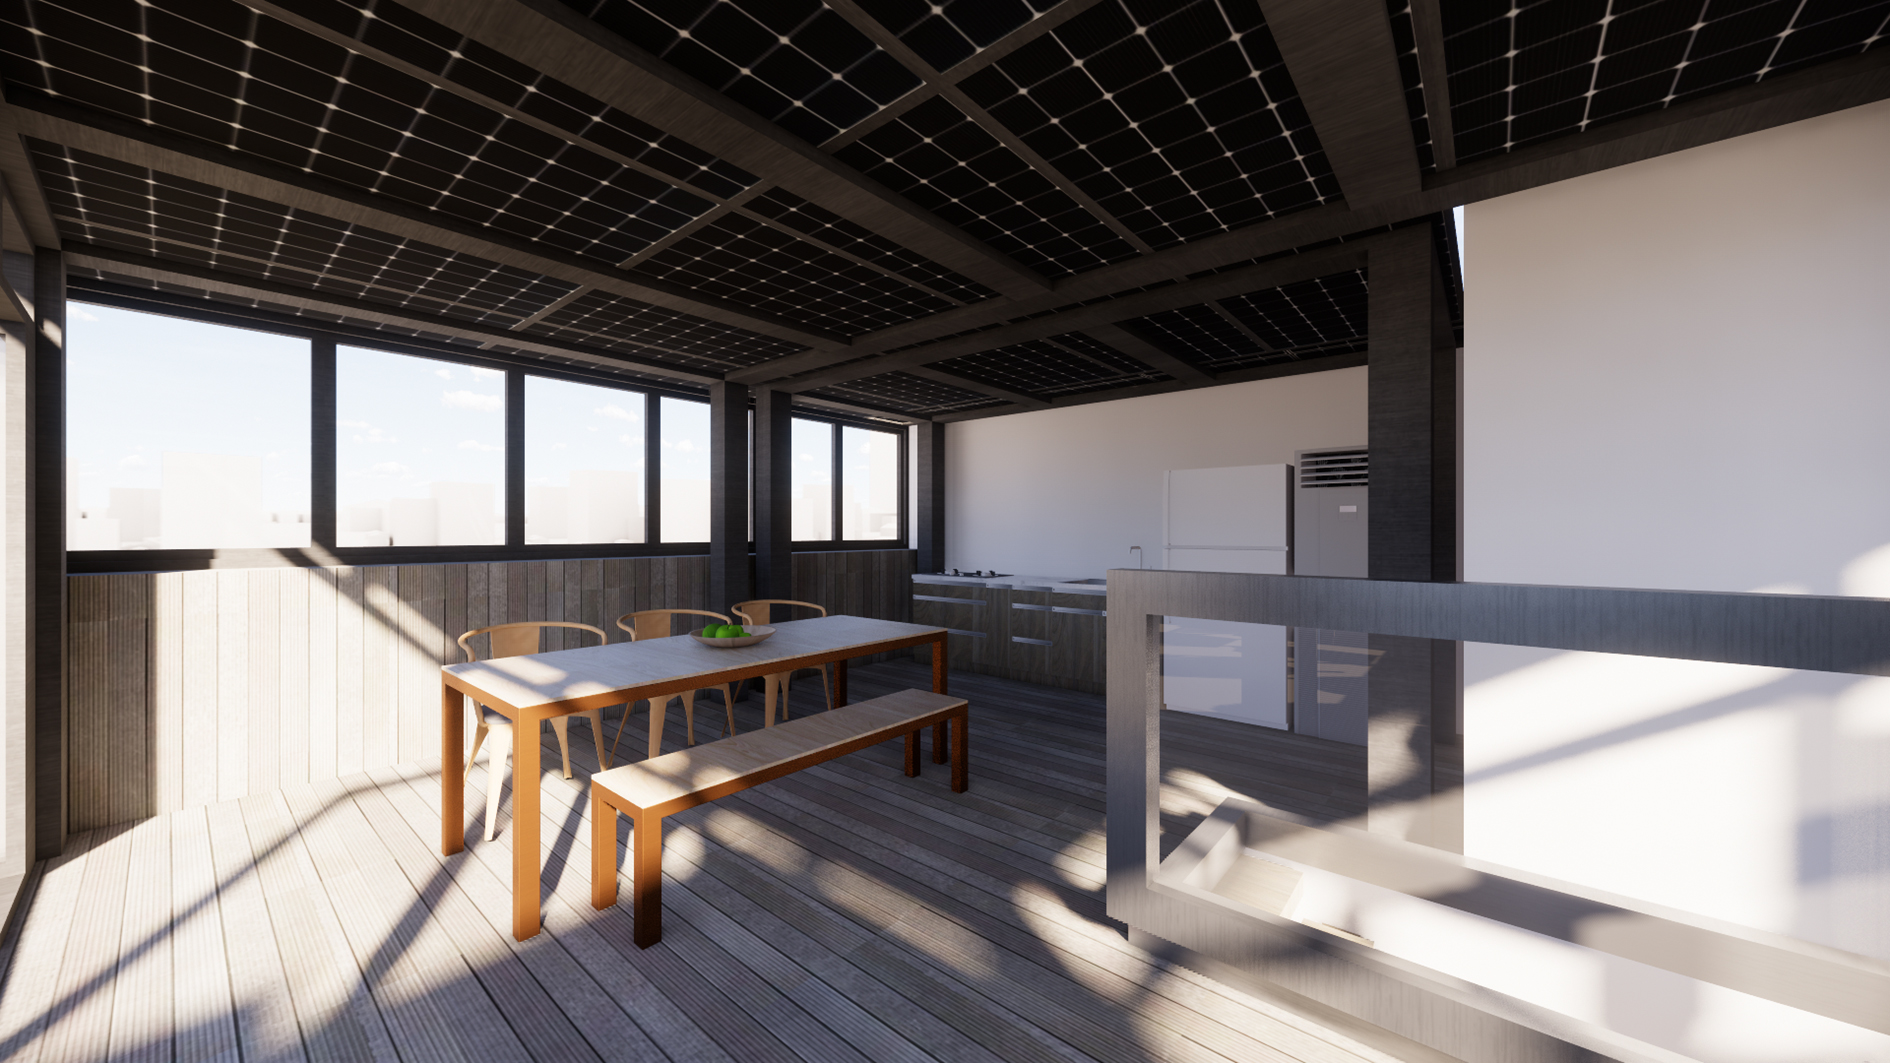 Tony Tsui - FAT Design Studio - Top Roof Duplex Renovation